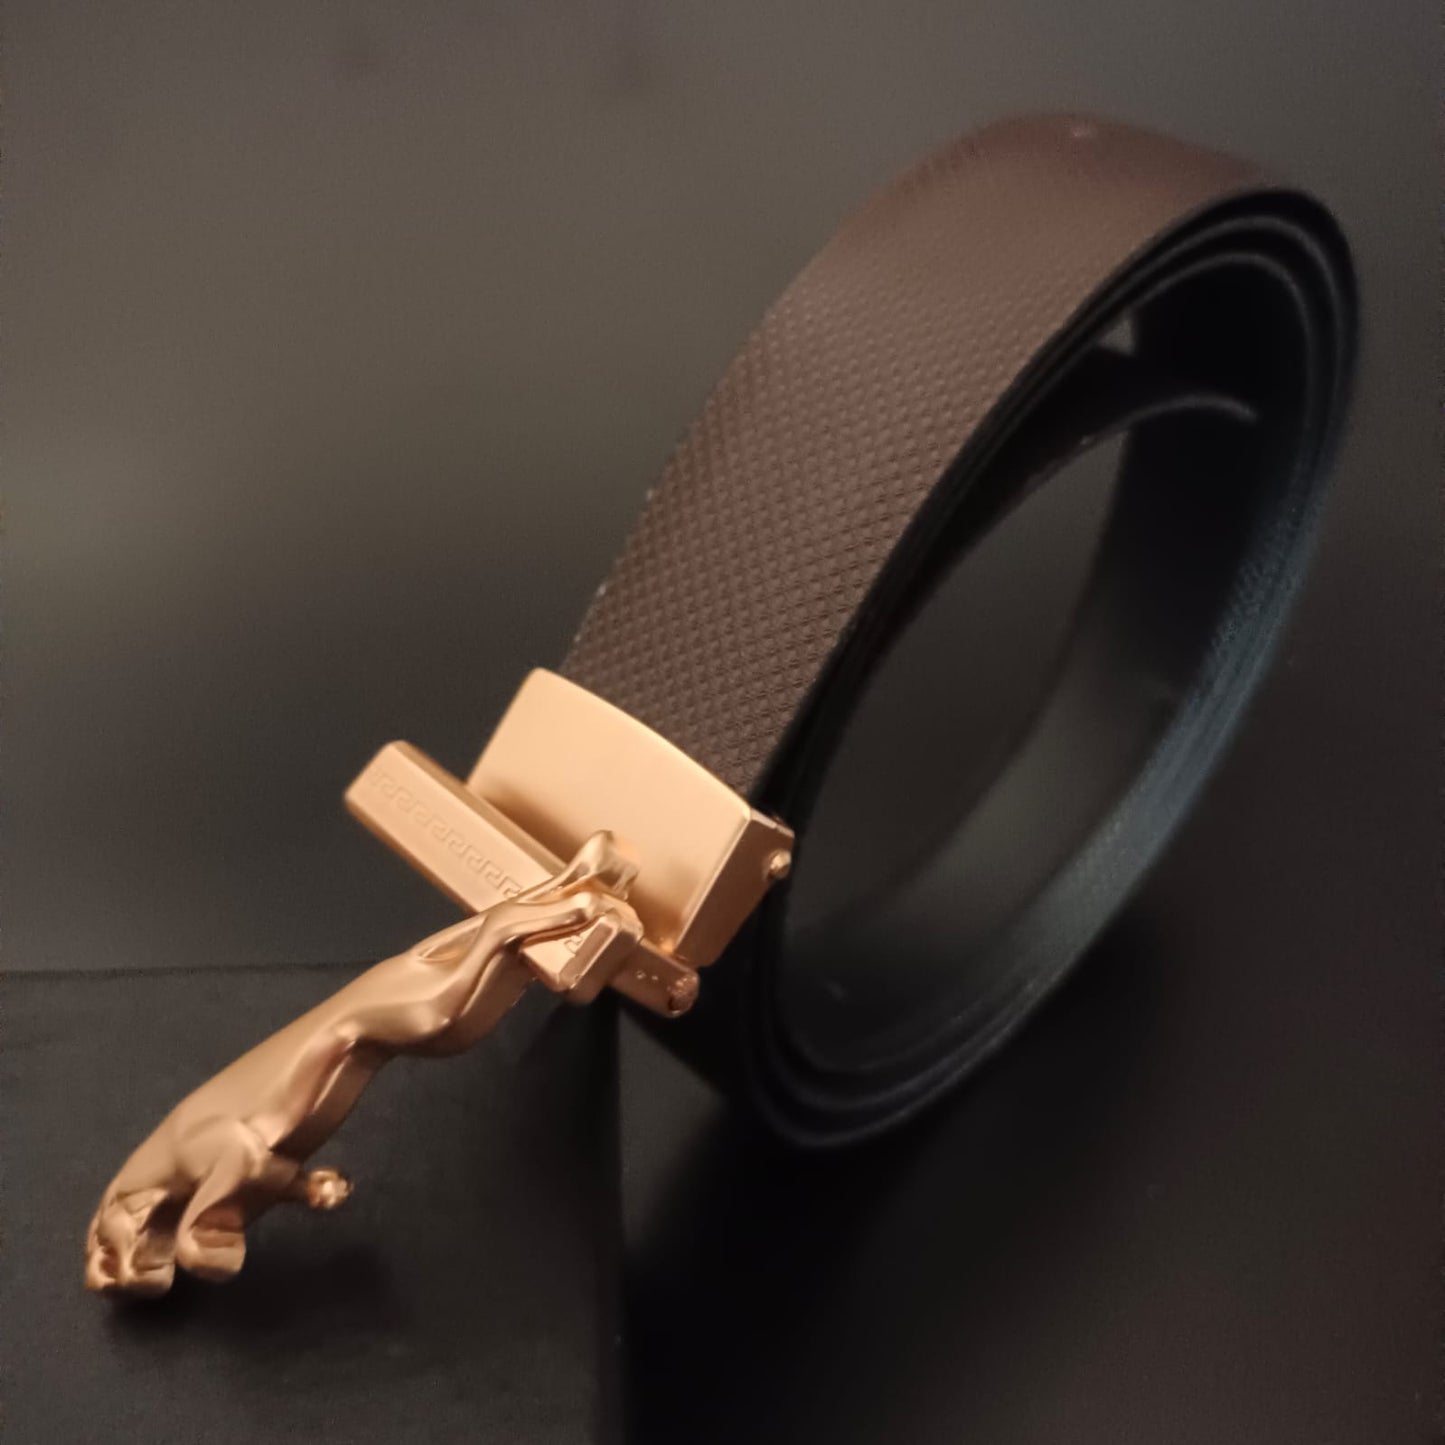 New Gold Jaguar Buckle Brown Belt For Men -Jack marc